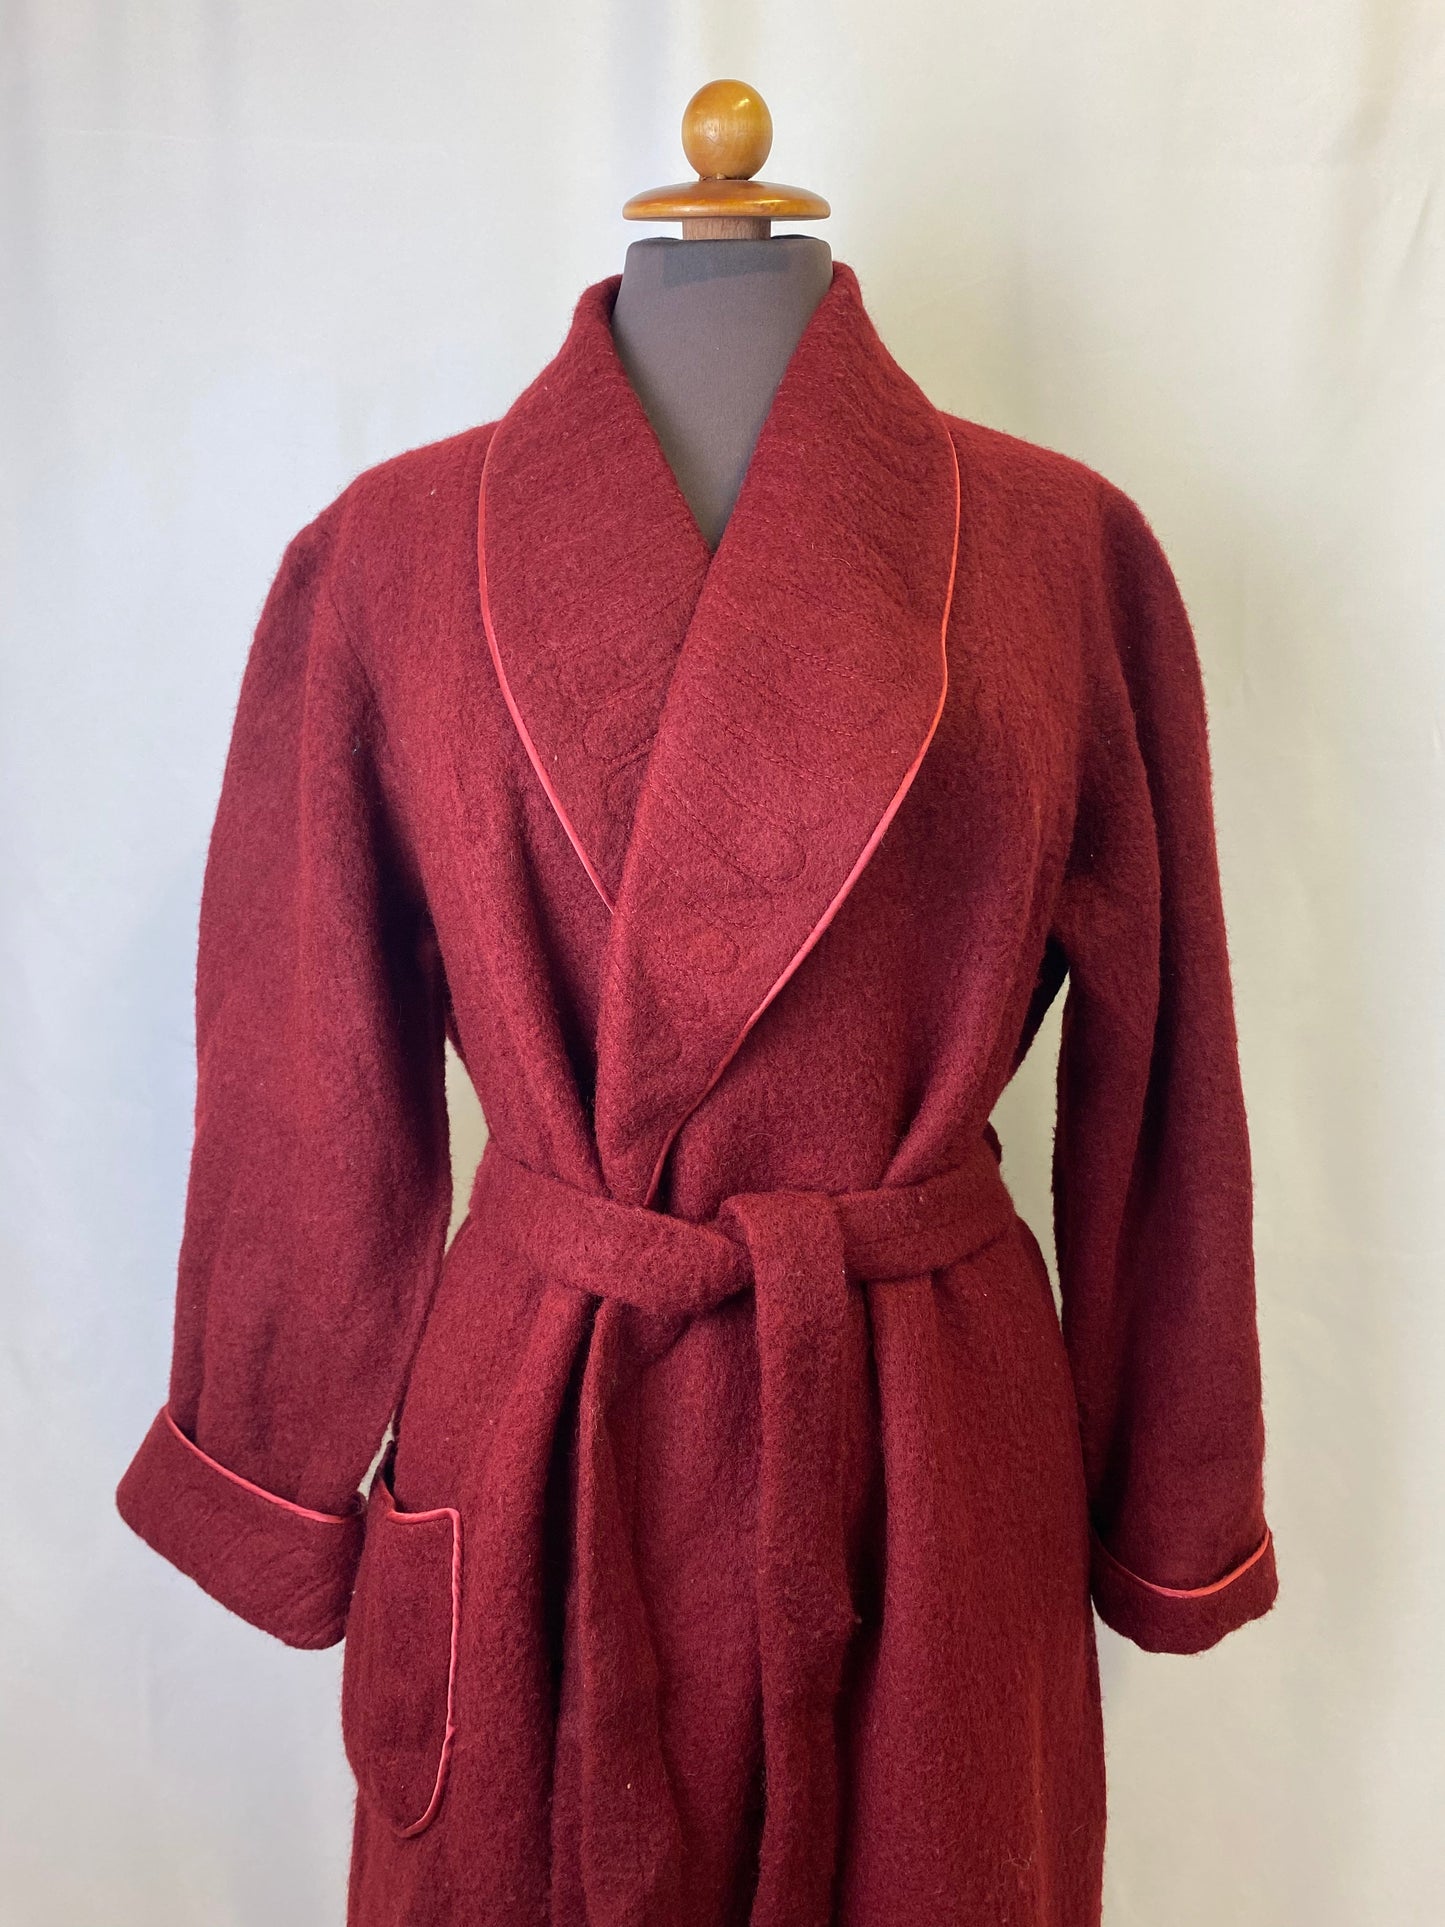 Vestaglia di lana rossa - TG. 40/42